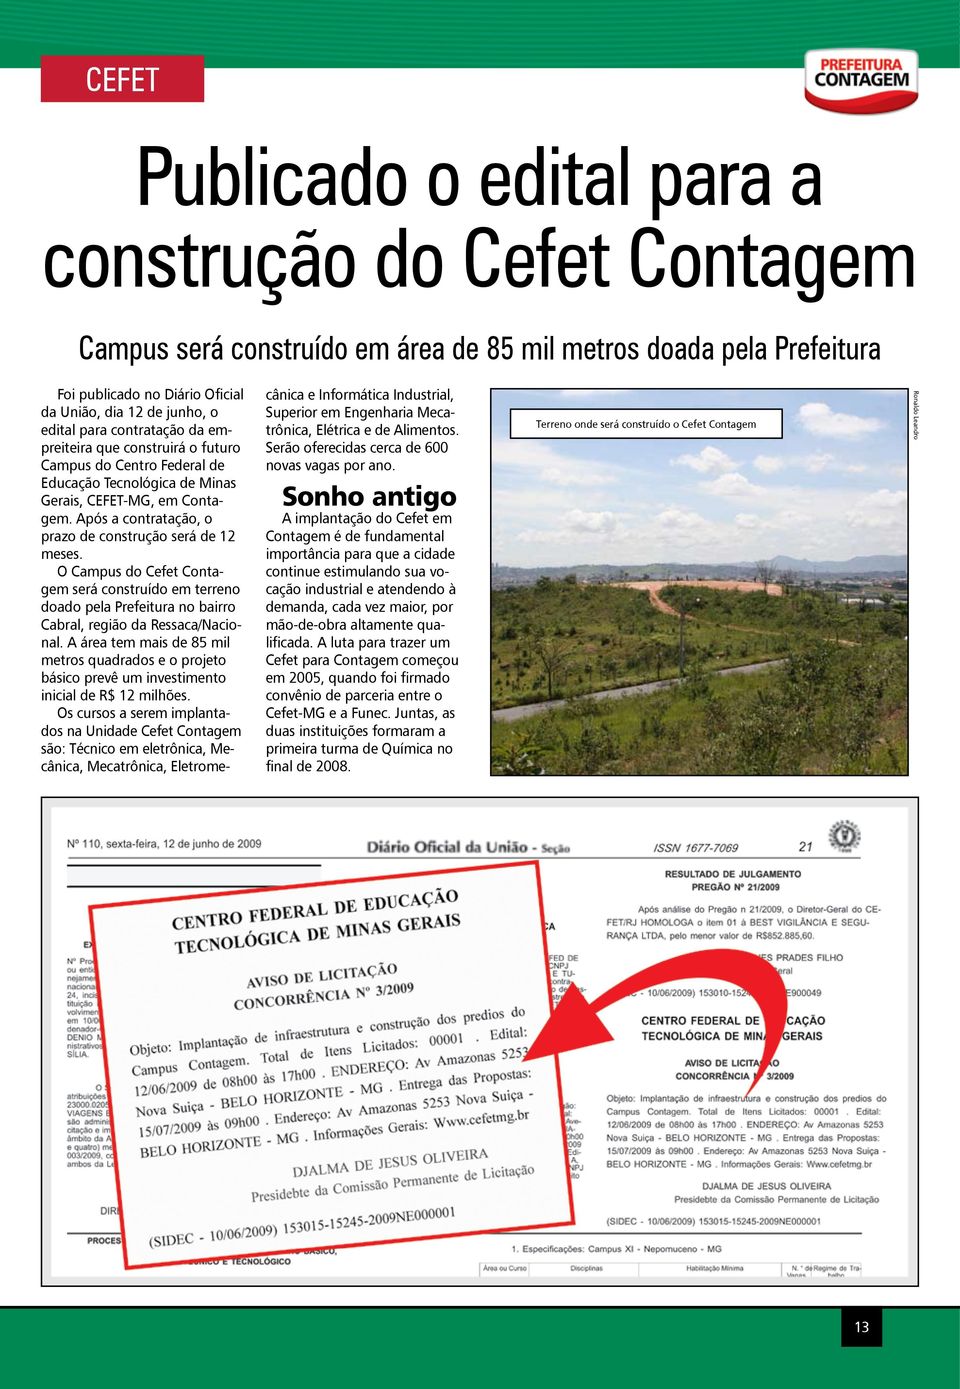 Após a contratação, o prazo de construção será de 12 meses. O Campus do Cefet Contagem será construído em terreno doado pela Prefeitura no bairro Cabral, região da Ressaca/Nacional.